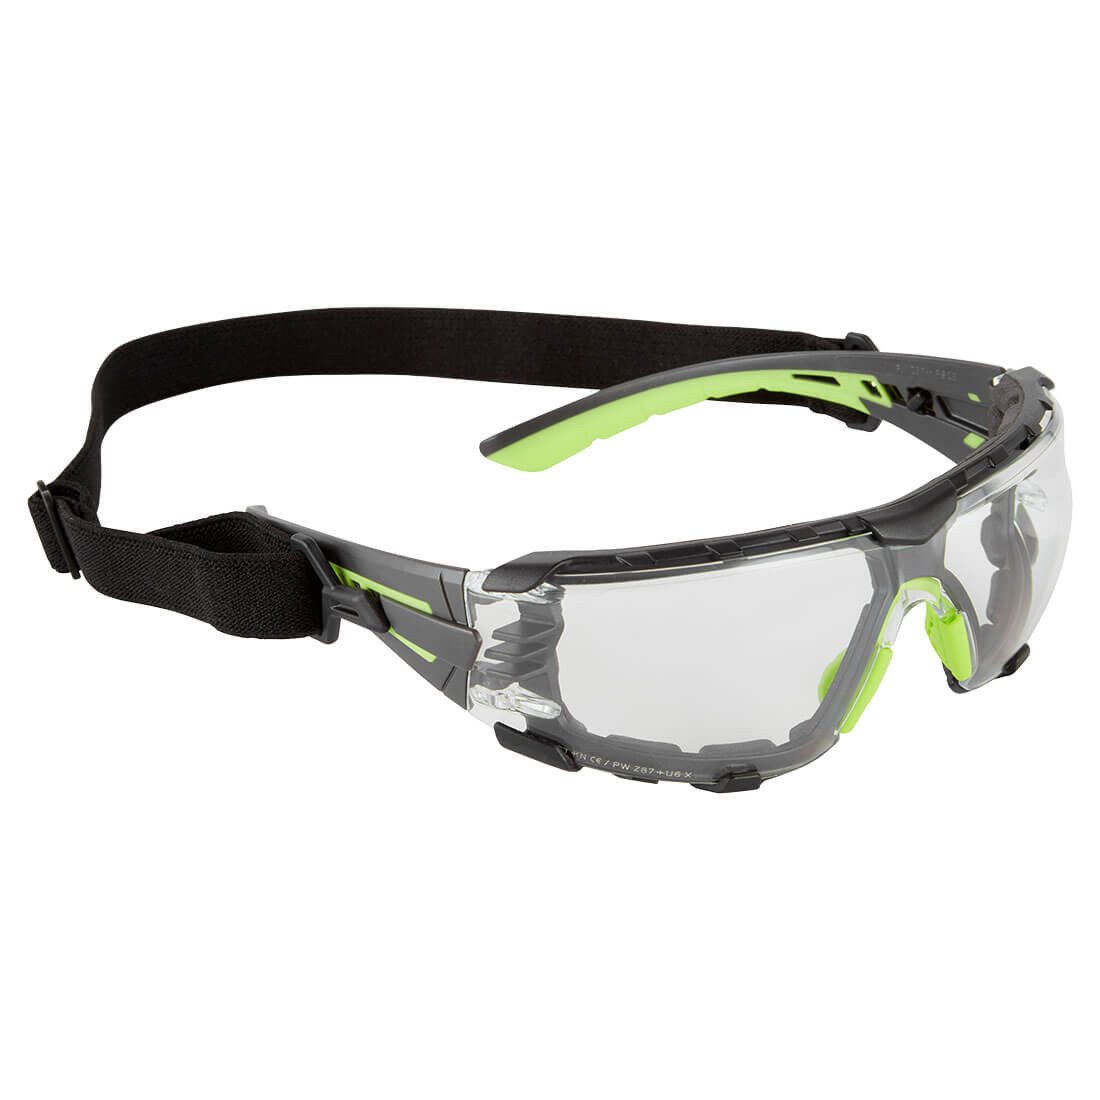 Gafas de seguridad Tech Look Pro KN - Equipamientos de protección personal